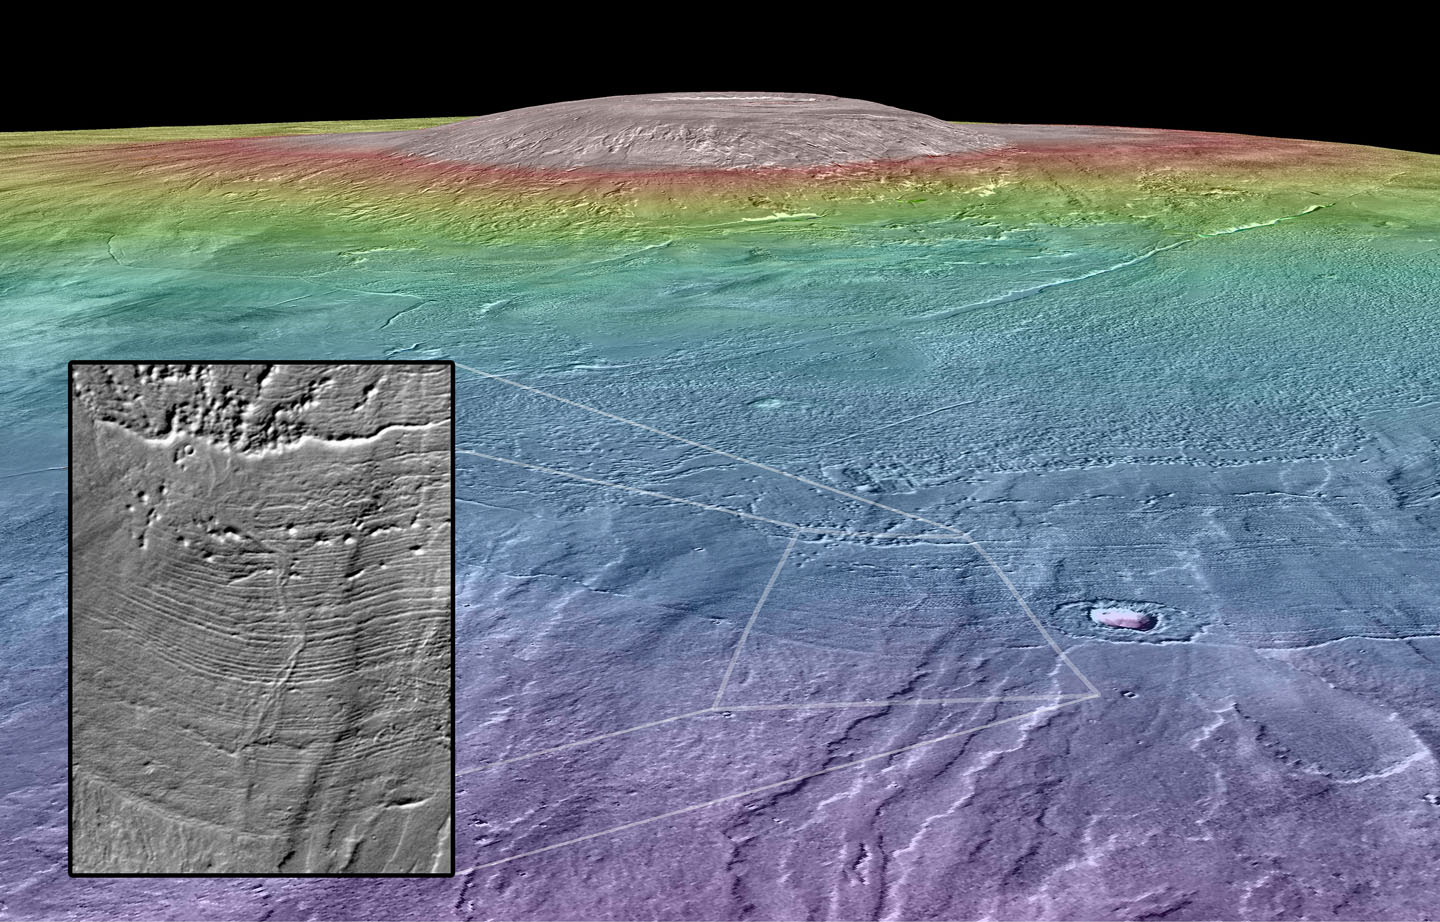 Canales fluviales posiblemente habitables emergen del borde los depósitos glaciales de los alrededores de Arsia Mons. Imagen: NASA/Goddard Space Flight Center/Arizona State University/Brown University.